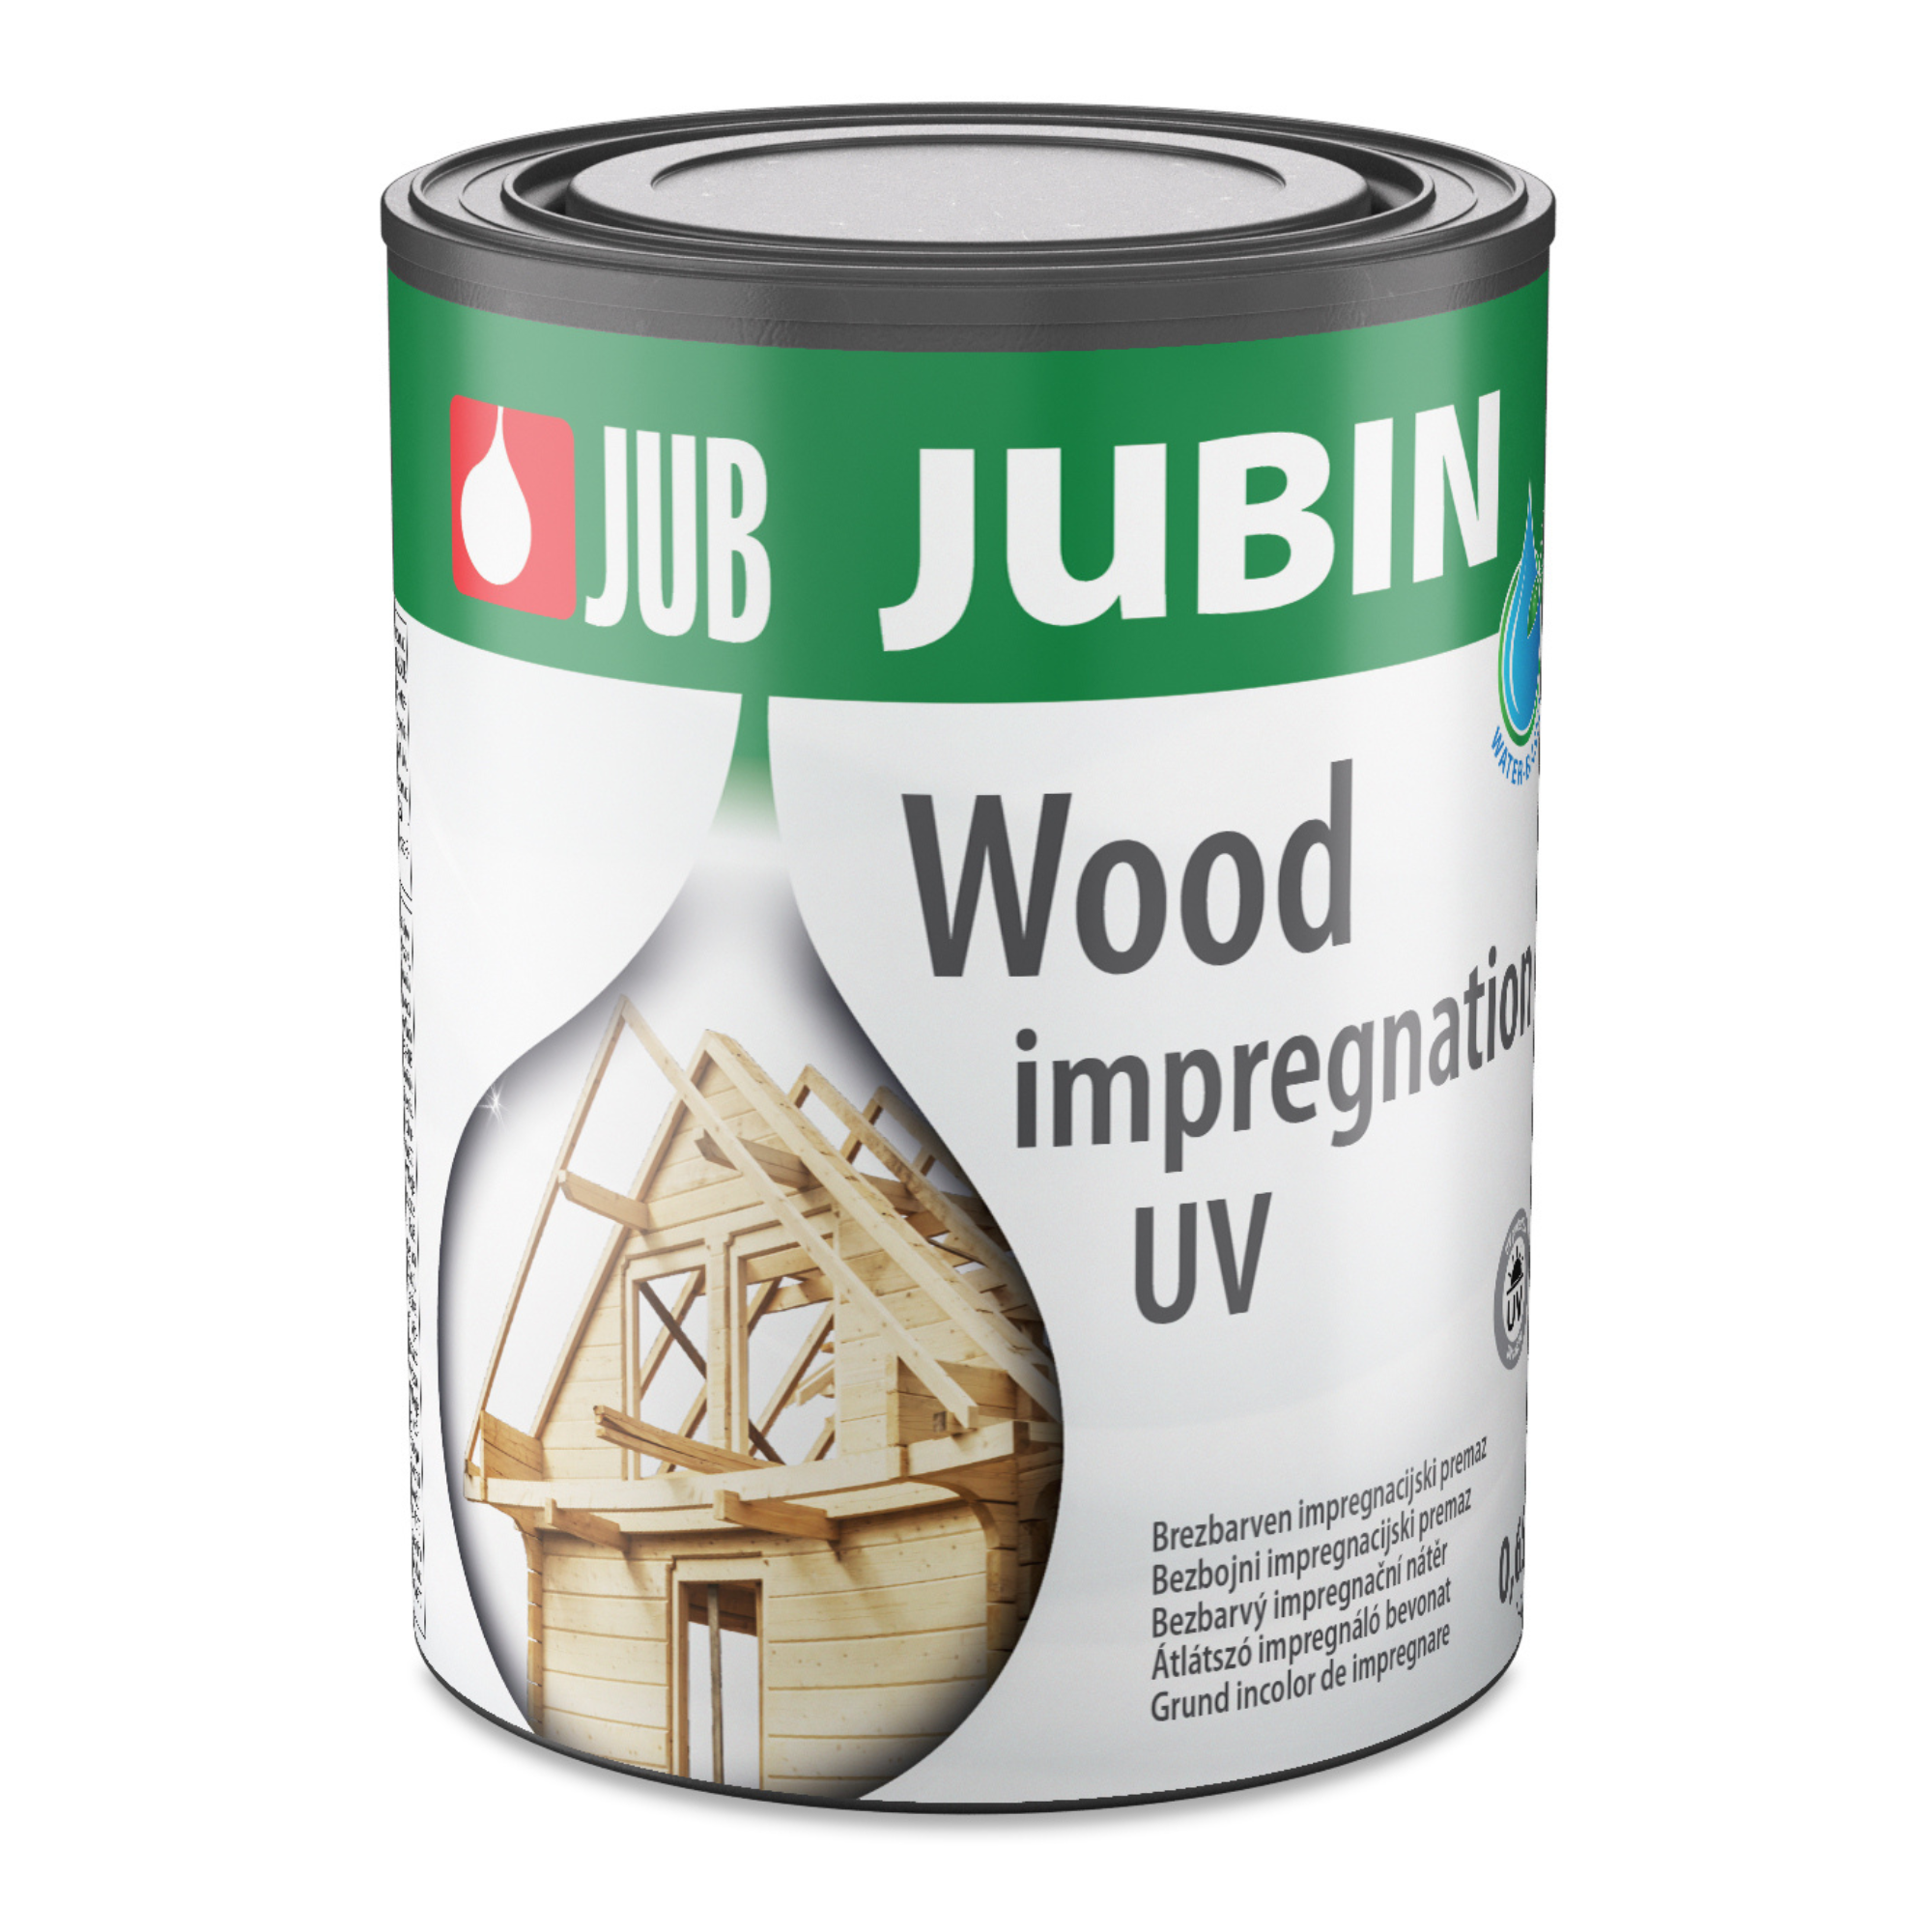 JUB JUBIN Wood impregnation UV biocídny impregnačný náter na drevo 0,65 l